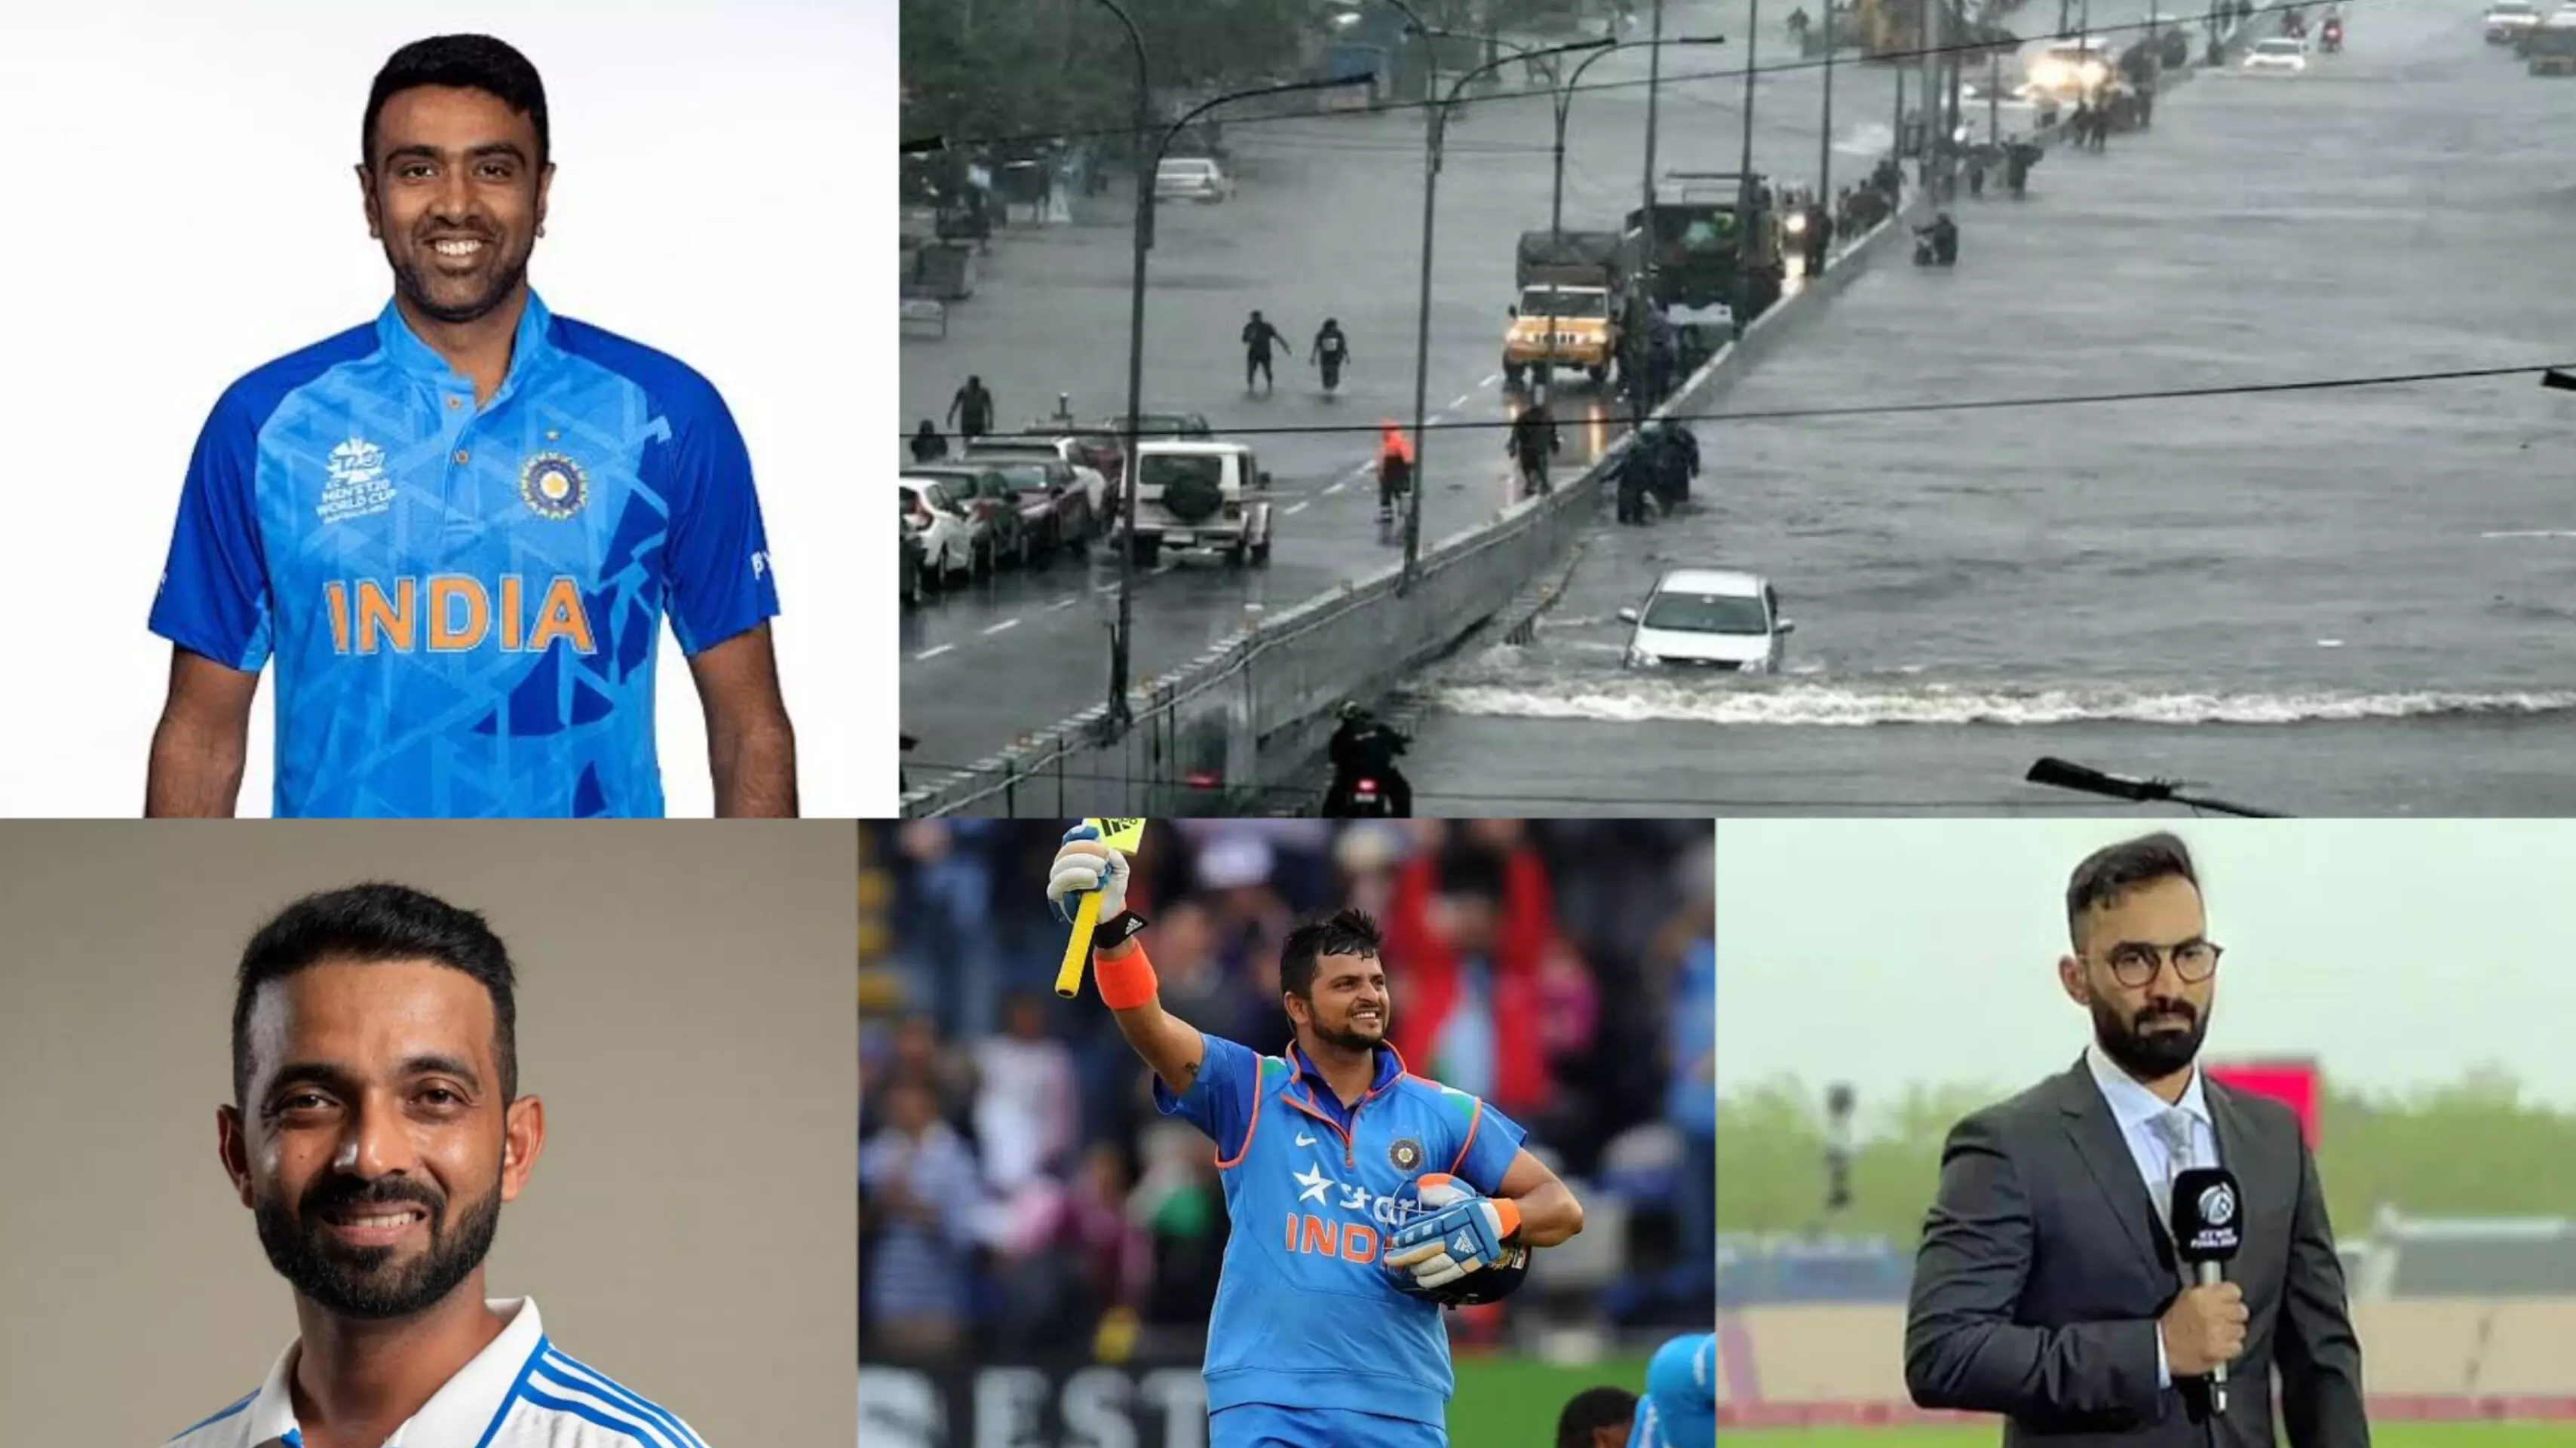 Cyclone Michaung: भारतीय खिलाड़ियों ने मिचौंग तूफ़ान पर जताई चिंता, चेन्नई और शहर के लोगों की सुरक्षित रहने की प्रार्थना की